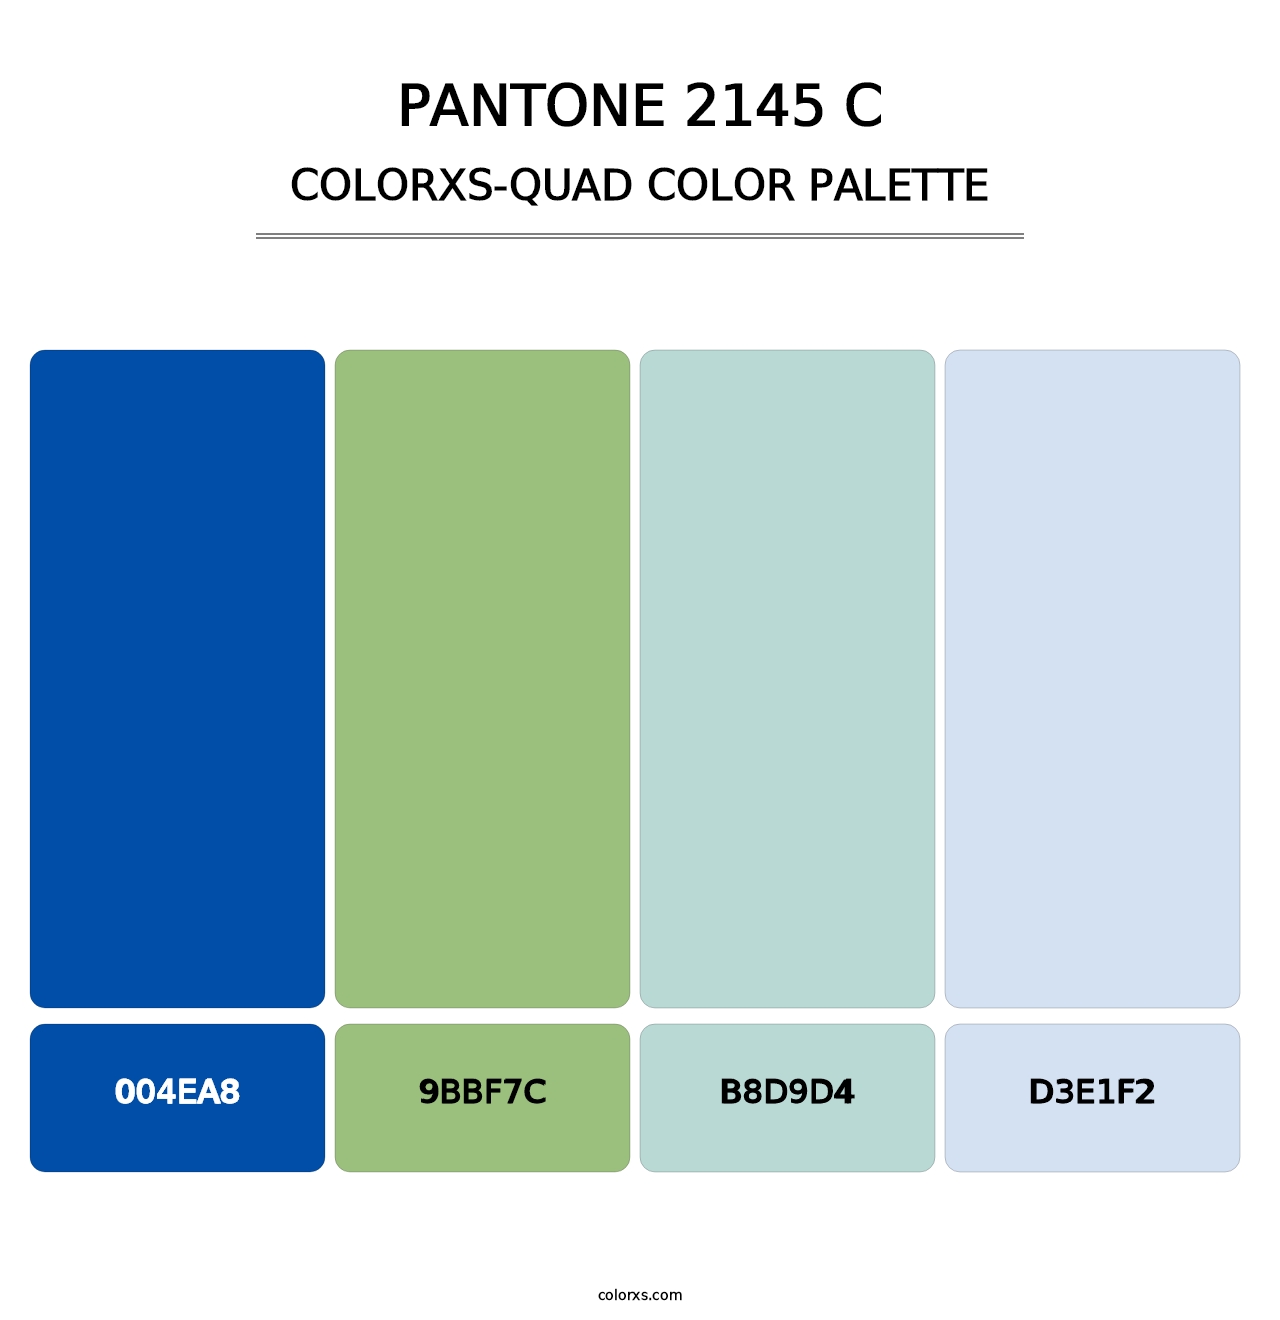 PANTONE 2145 C - Colorxs Quad Palette